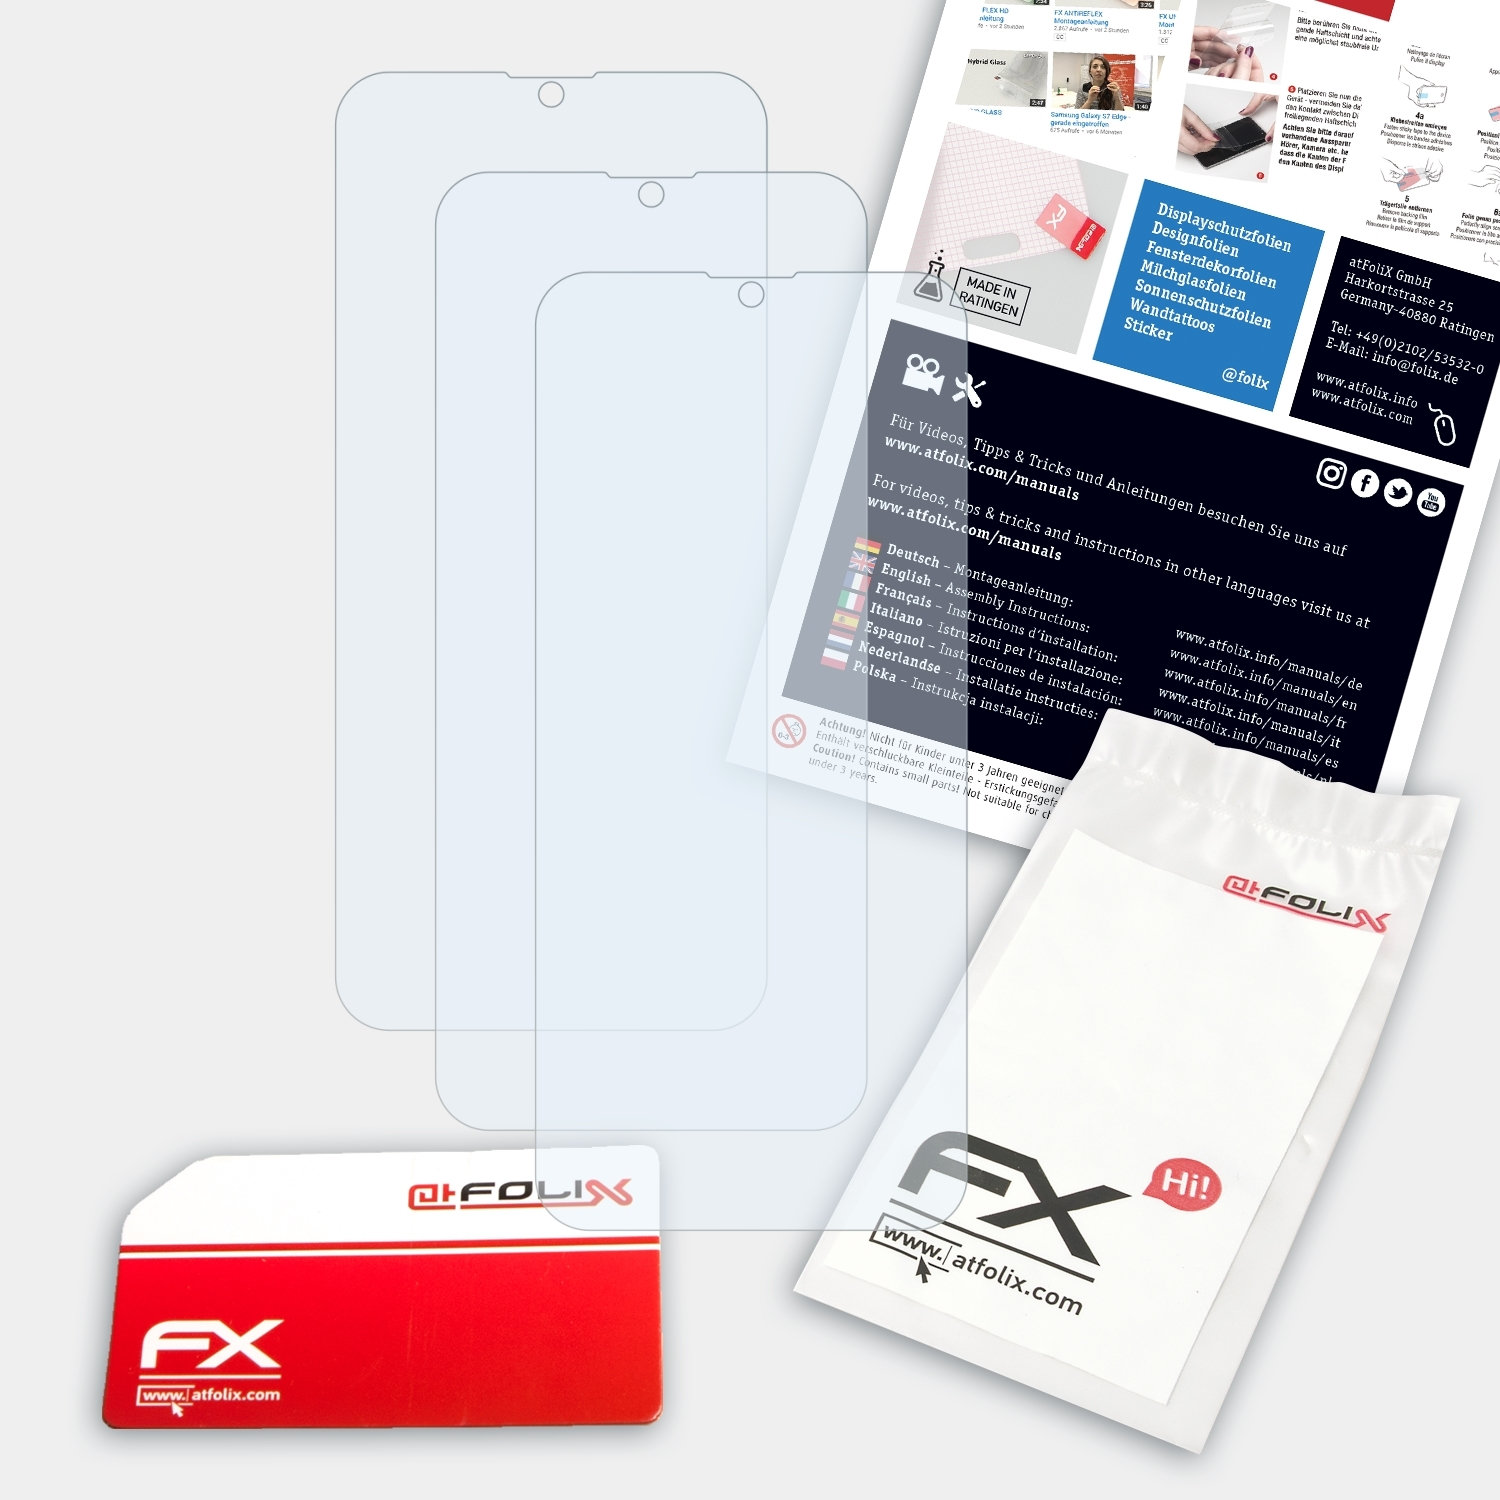 ATFOLIX 3x Note Ulefone Displayschutz(für FX-Clear 8)